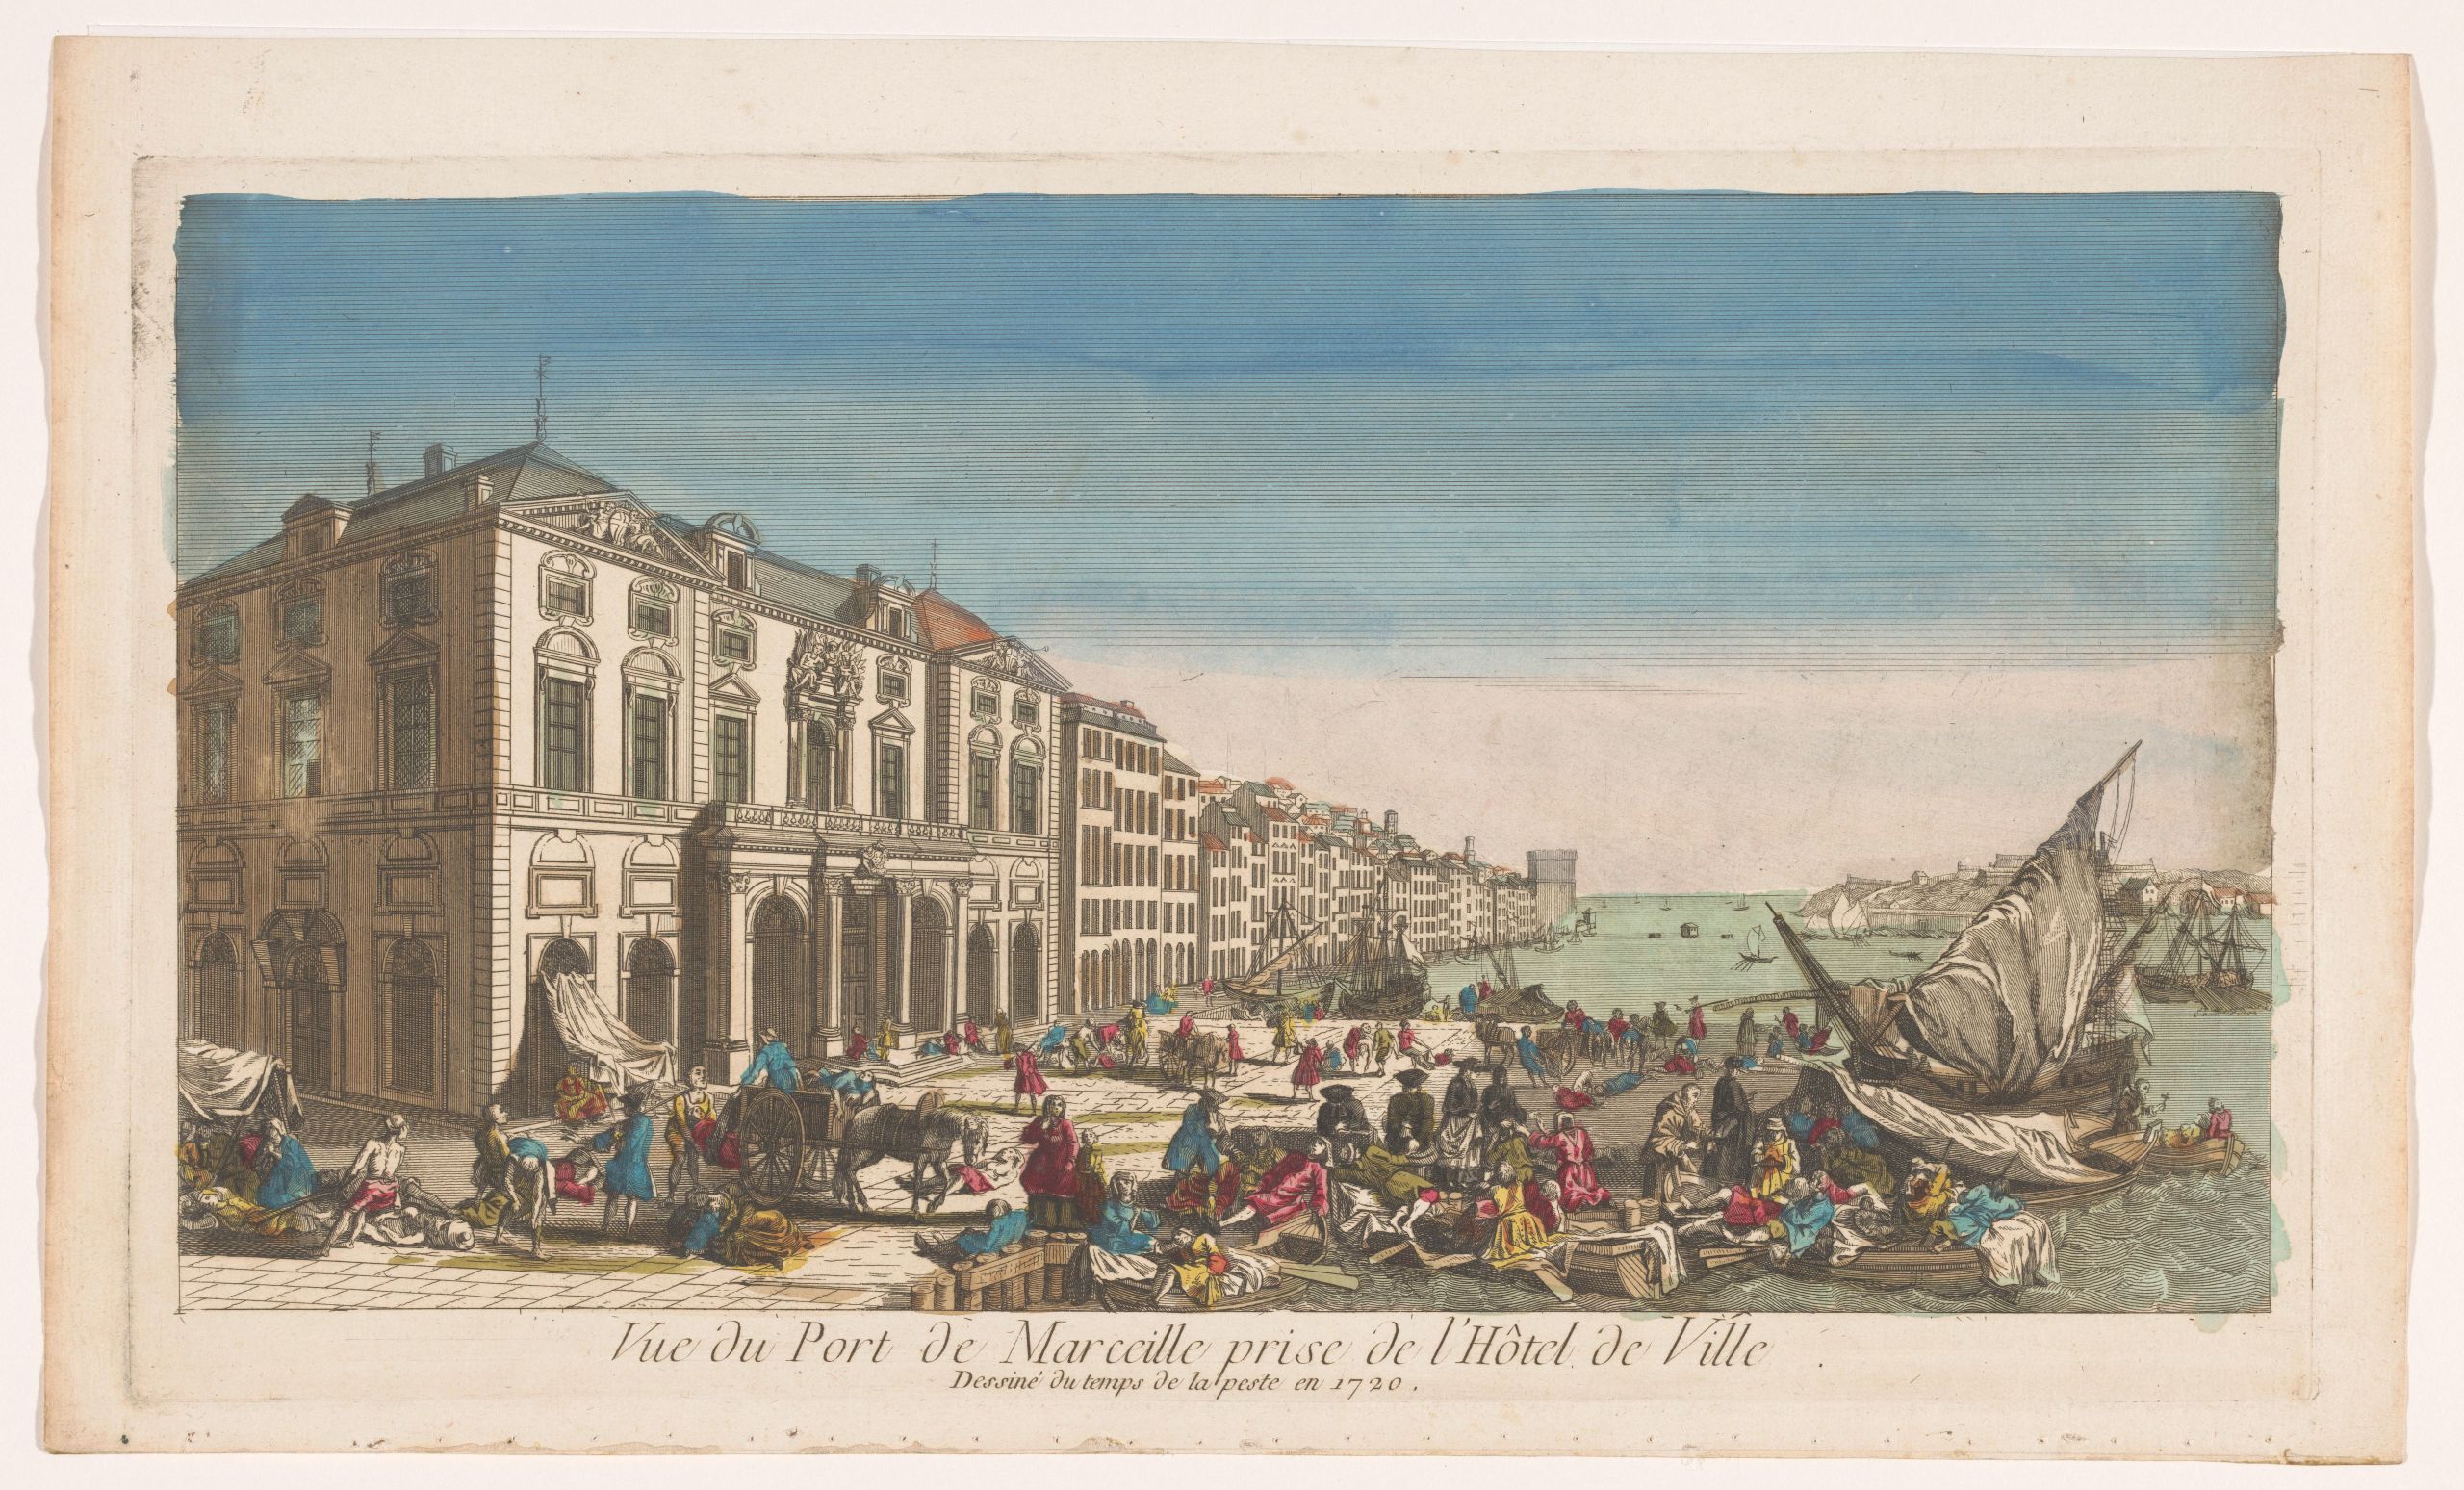 Le Vieux-Port de Marseille pendant l'épidémie de peste / Rijksmuseum Amsterdam